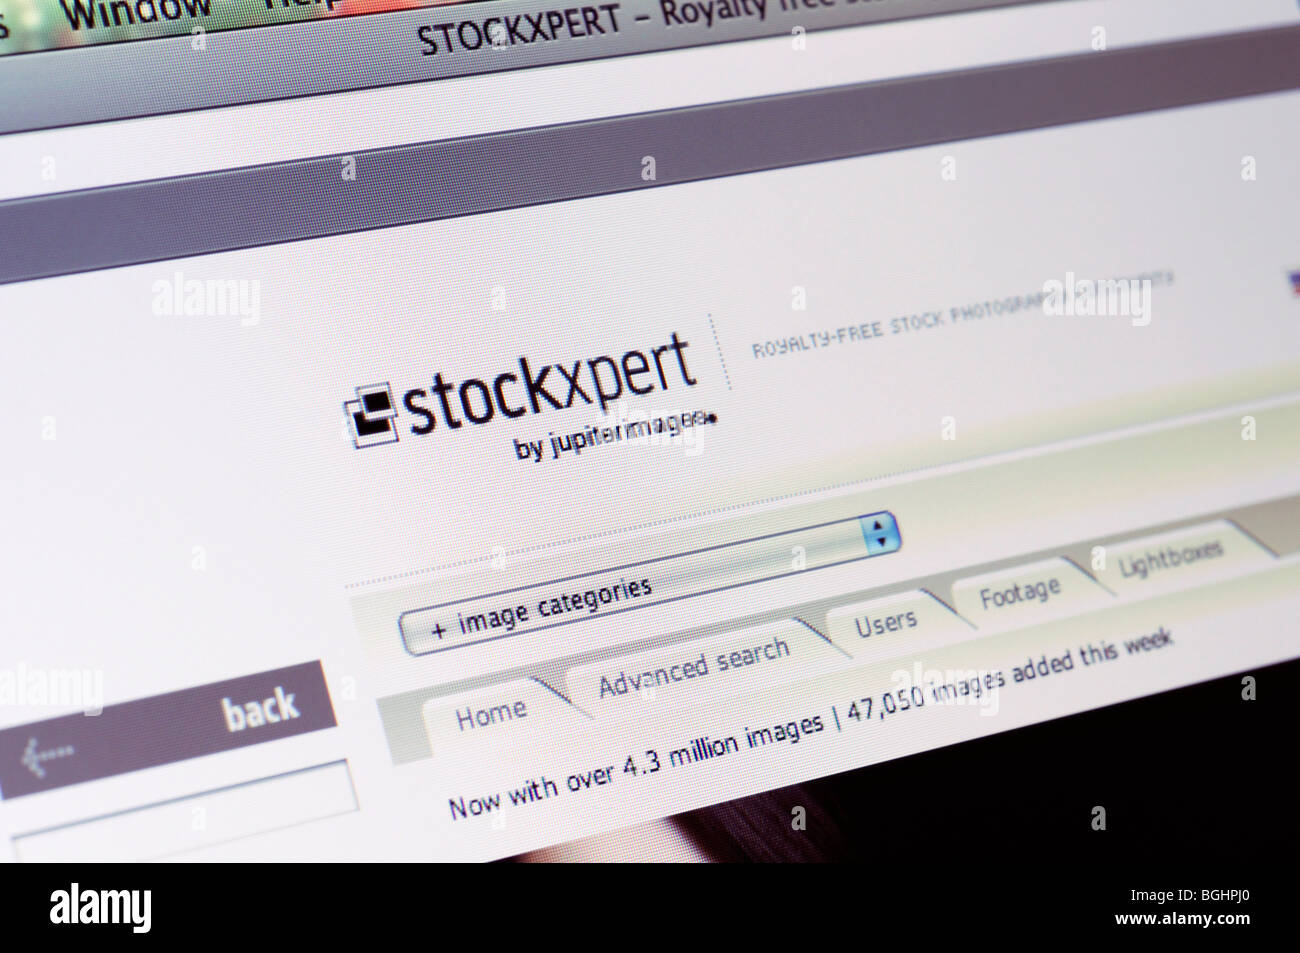 Stockxpert image agency website Stock Photo